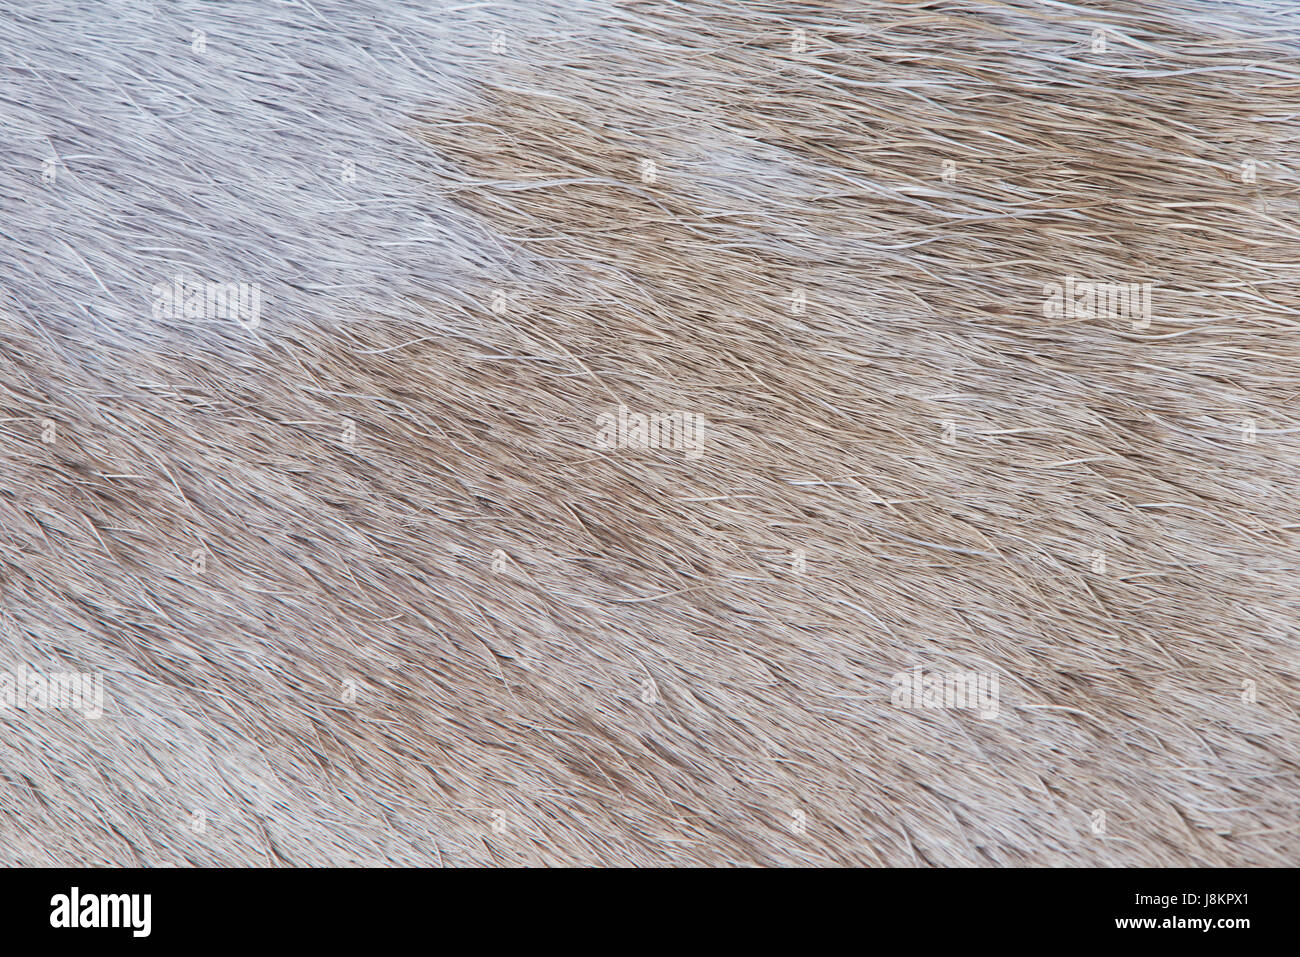 Animaux à fourrure brun clair texture pattern close-up. Les cheveux de lumière animale Banque D'Images